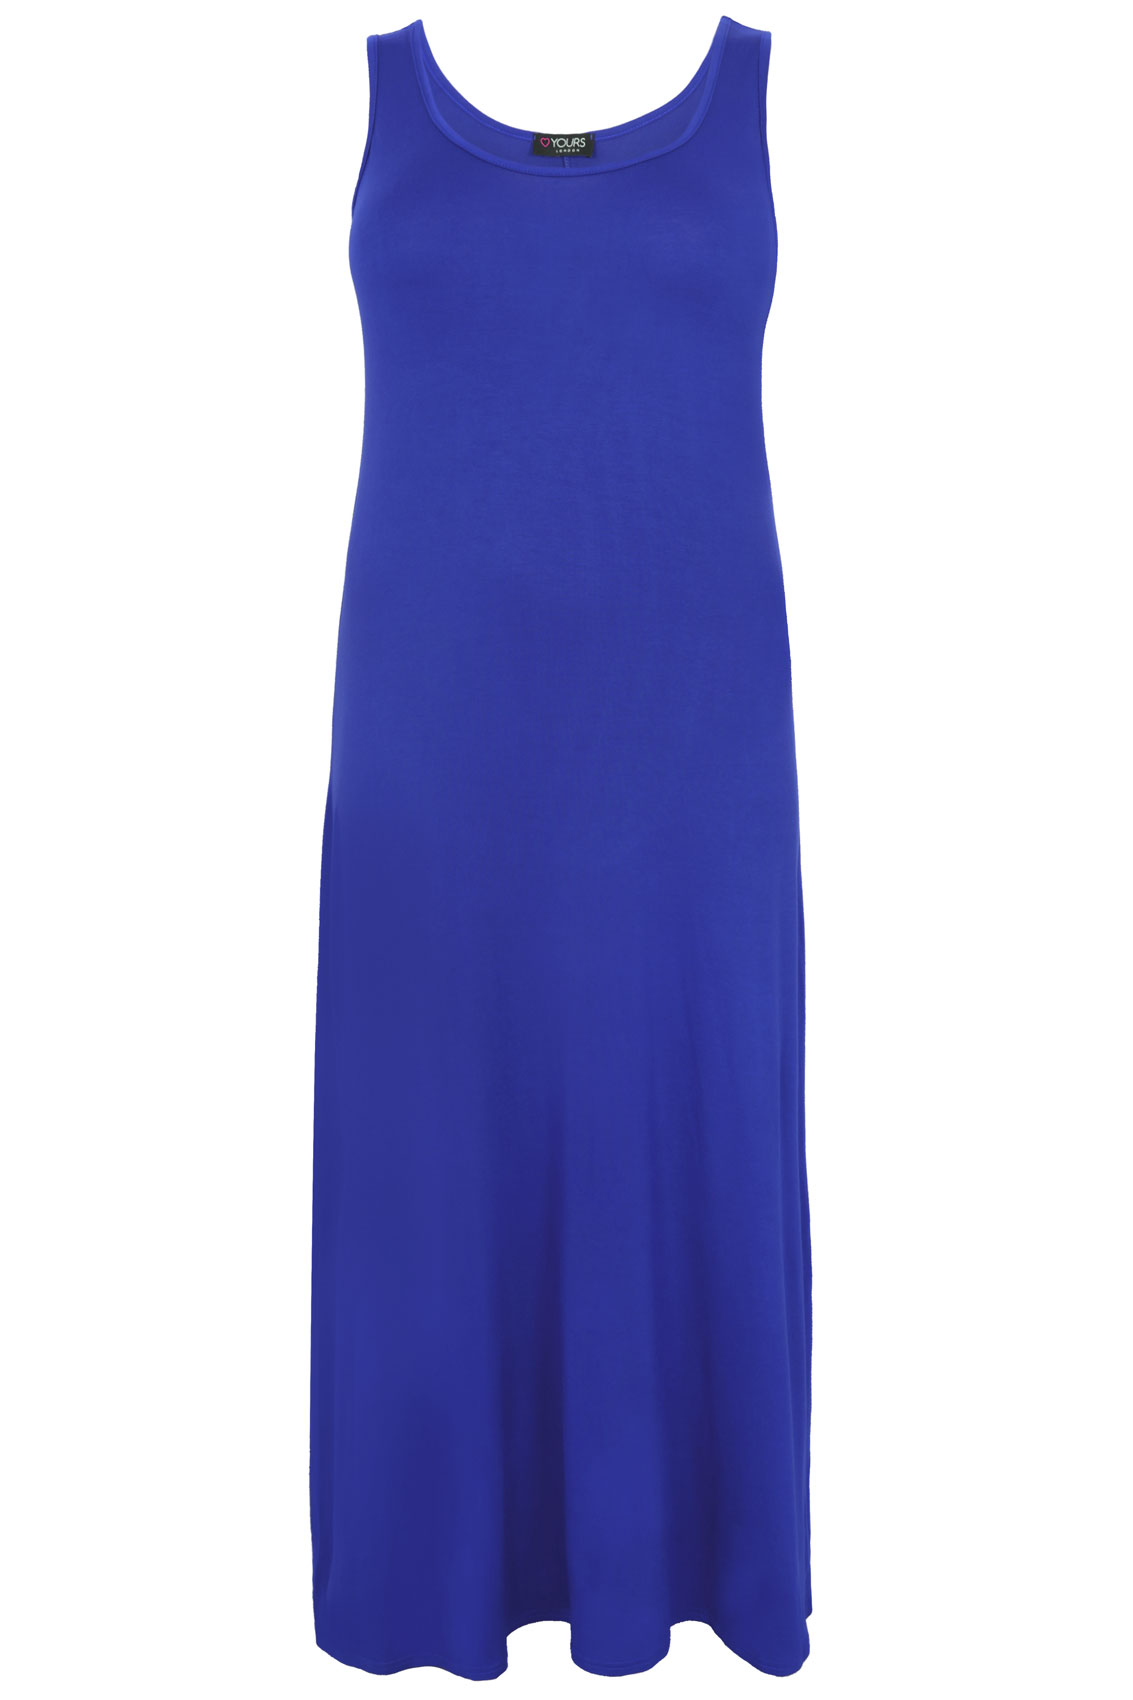 Royal blue dress size 16